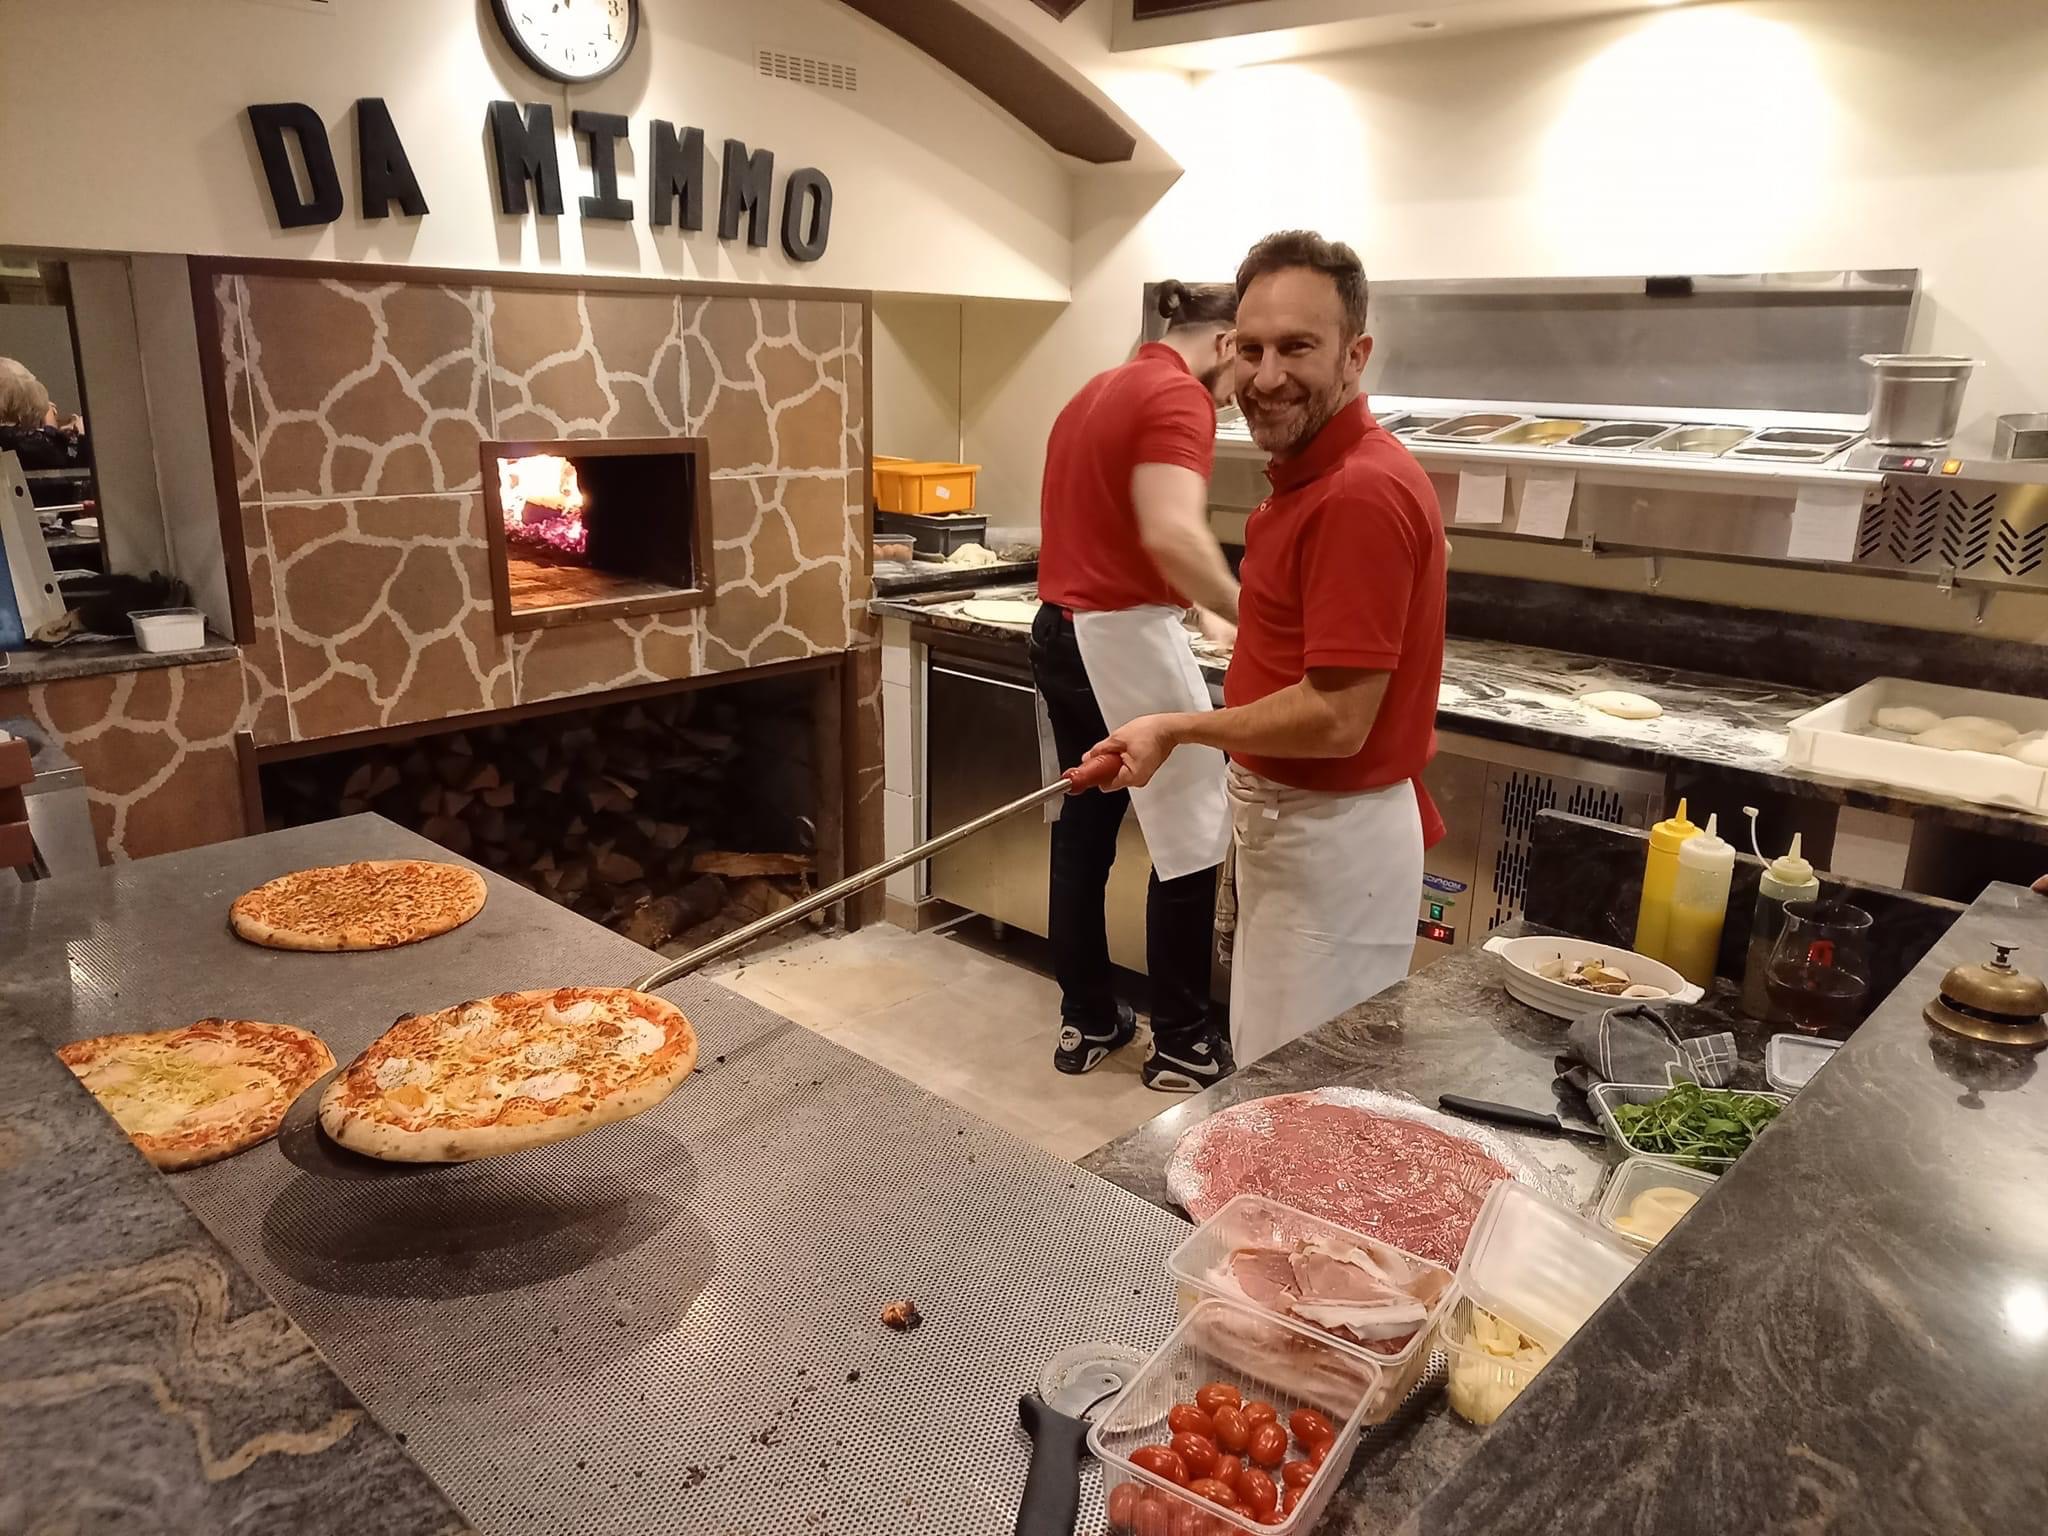 Pizzailo Da Mimmo